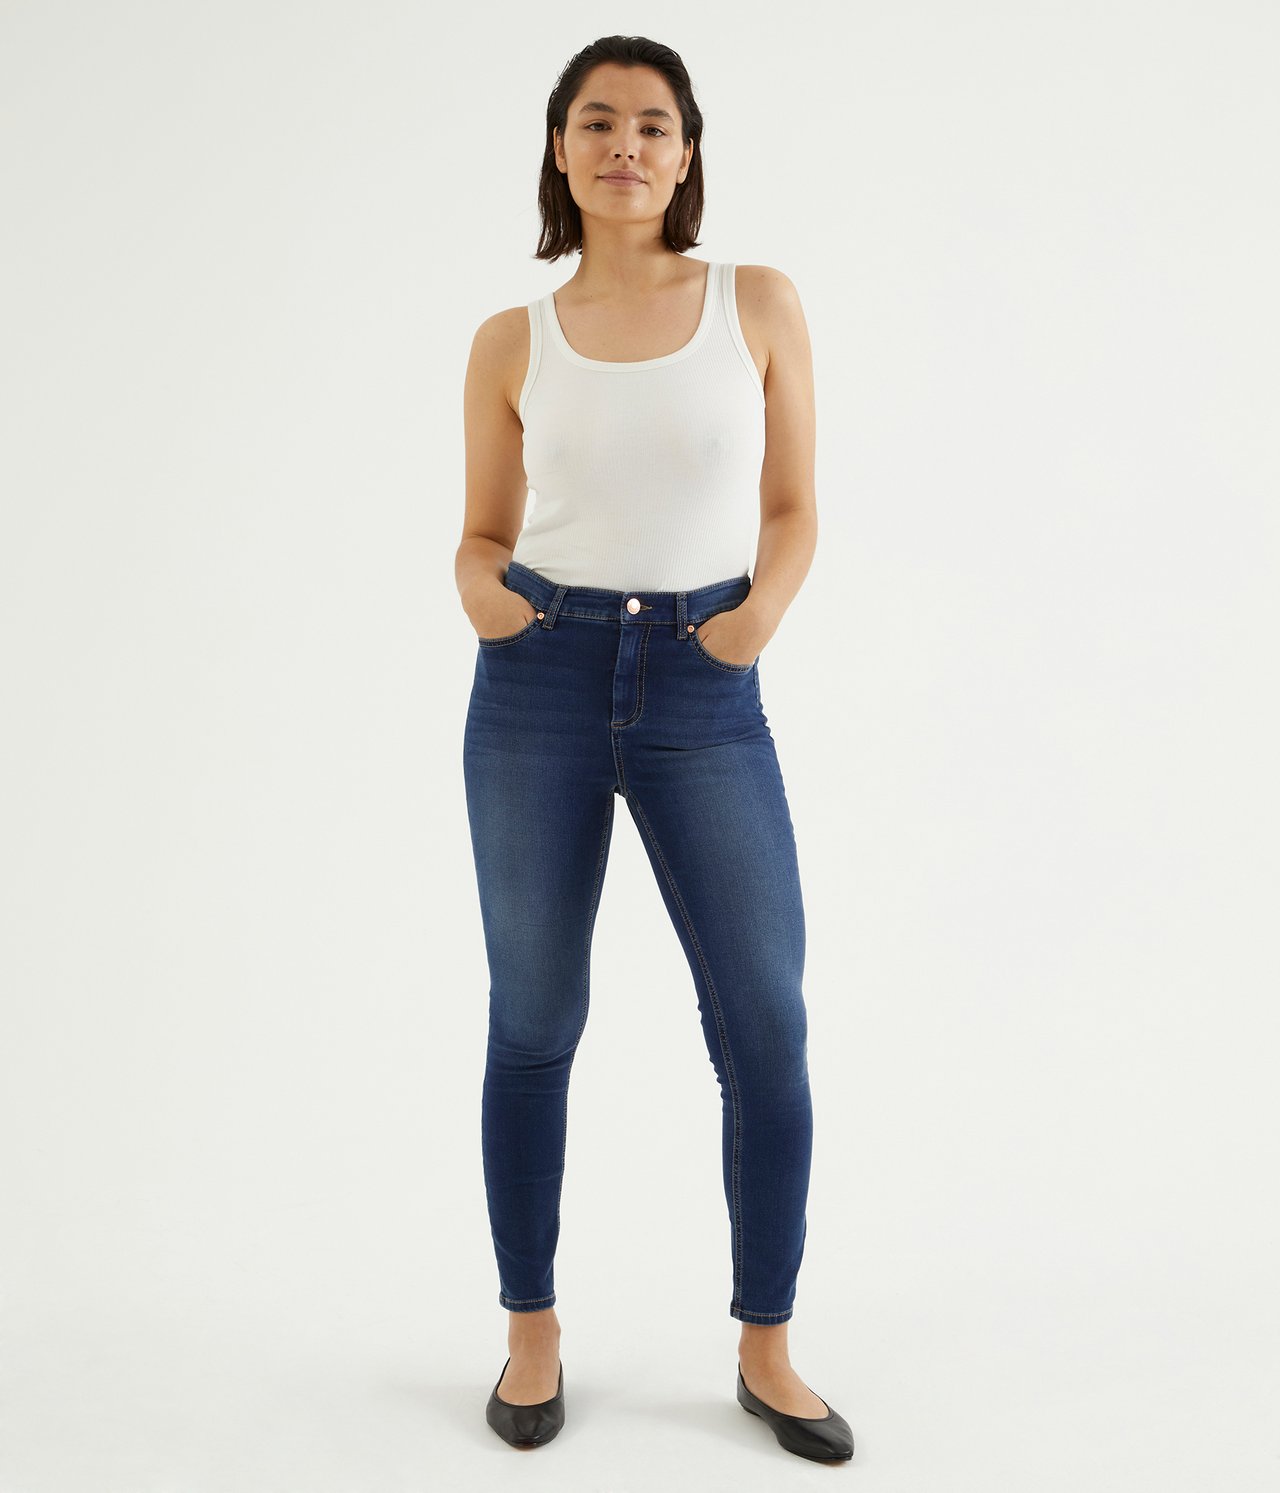 Super slim jeans short leg Mørk denim - null - 0